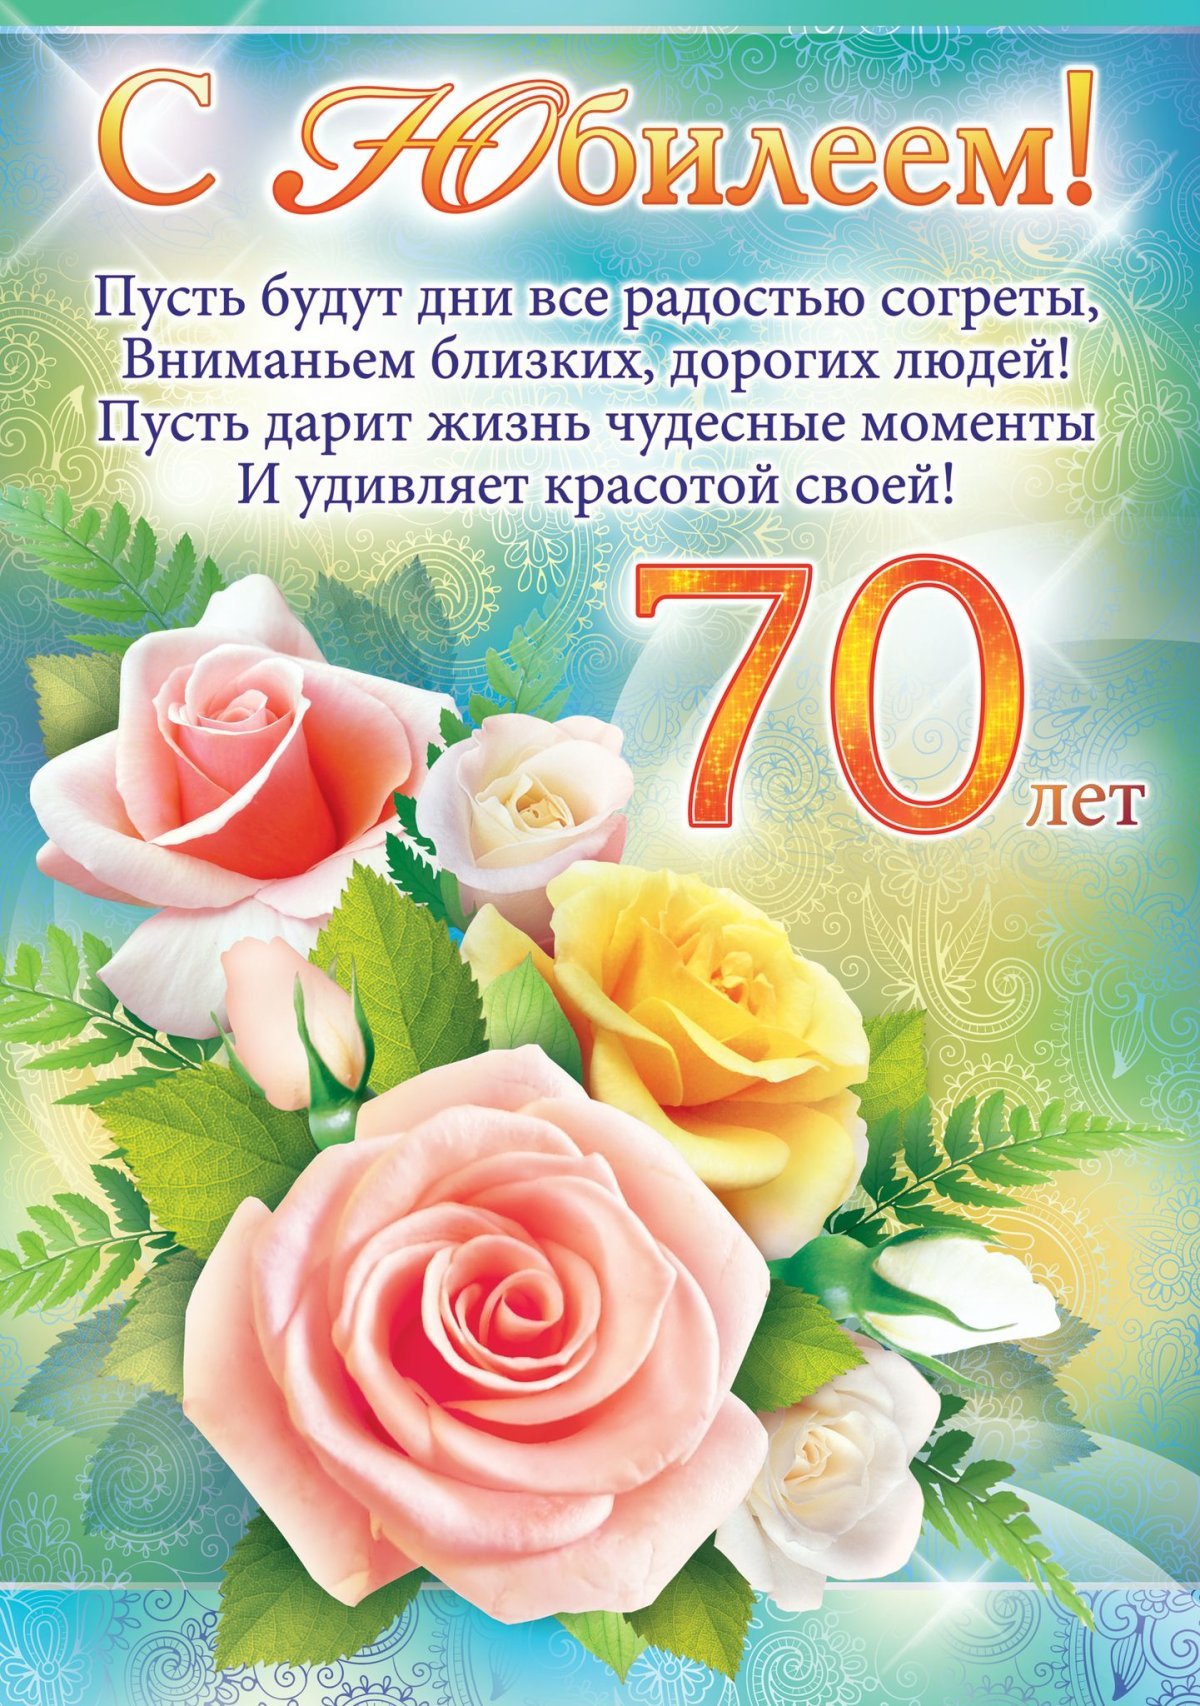 Аудио поздравления Маме с Днём Рождения от Путина и музыкальные!